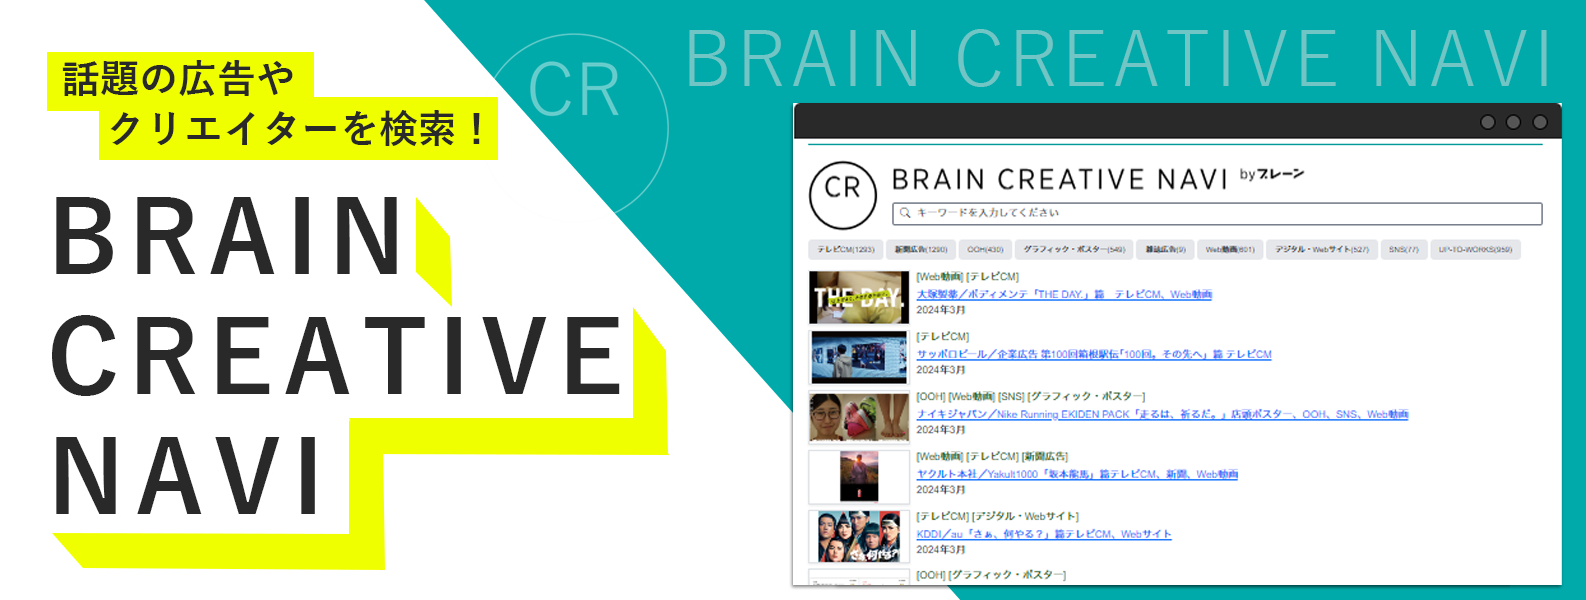 Brain Creative Navi提供開始メインビジュアル